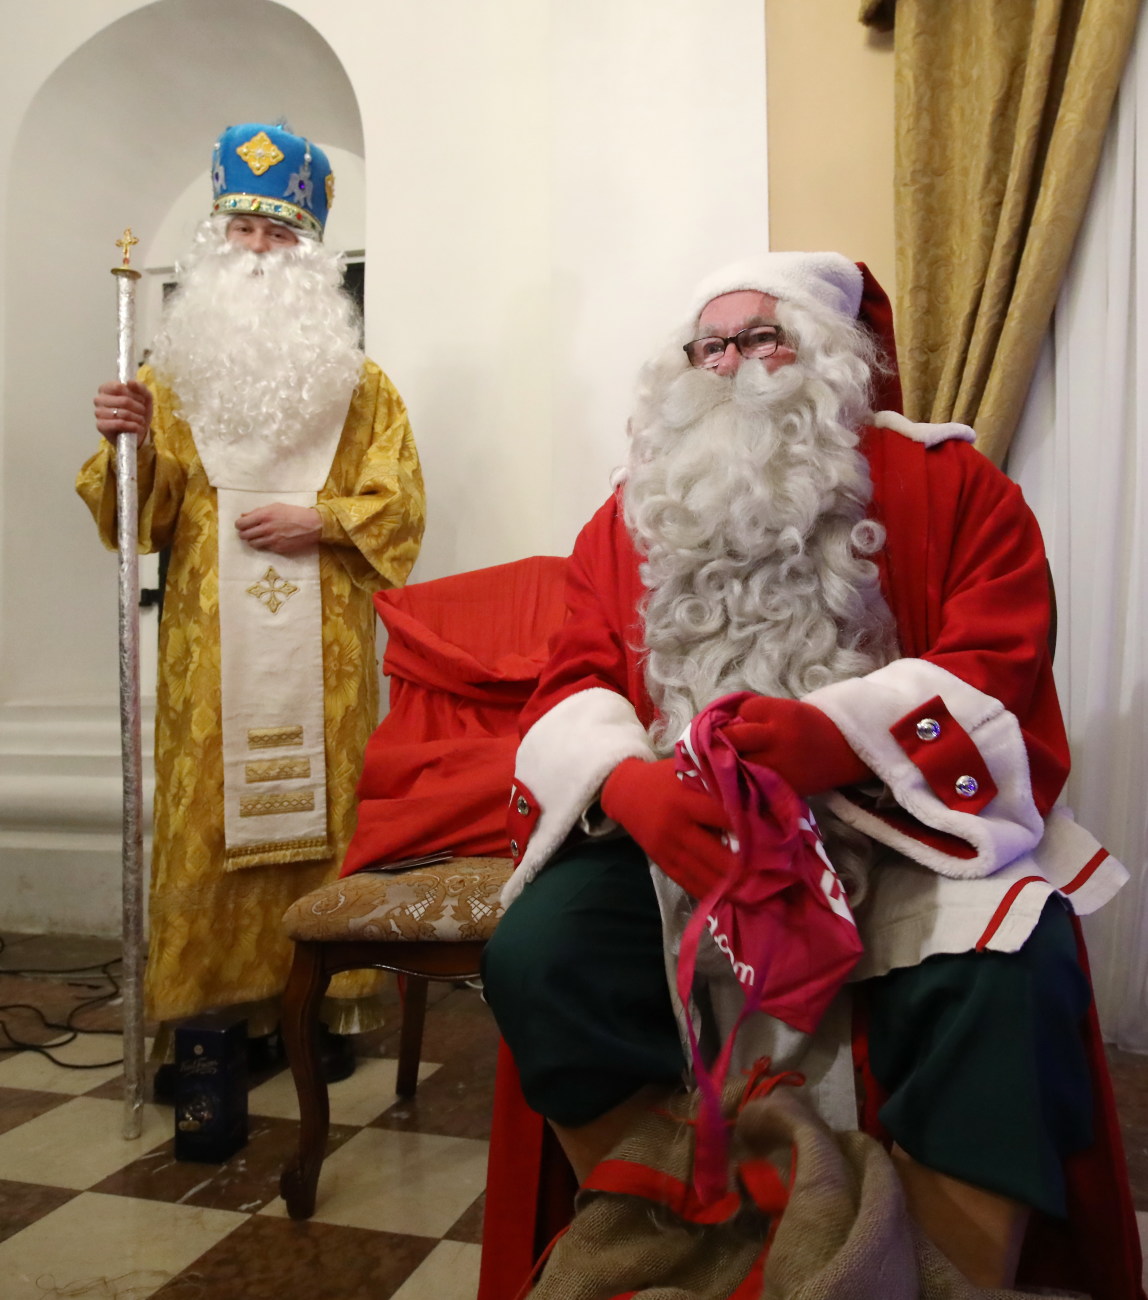 В Киеве встретились Святой Николай и финский Йоулупукки (Санта-Клаус)